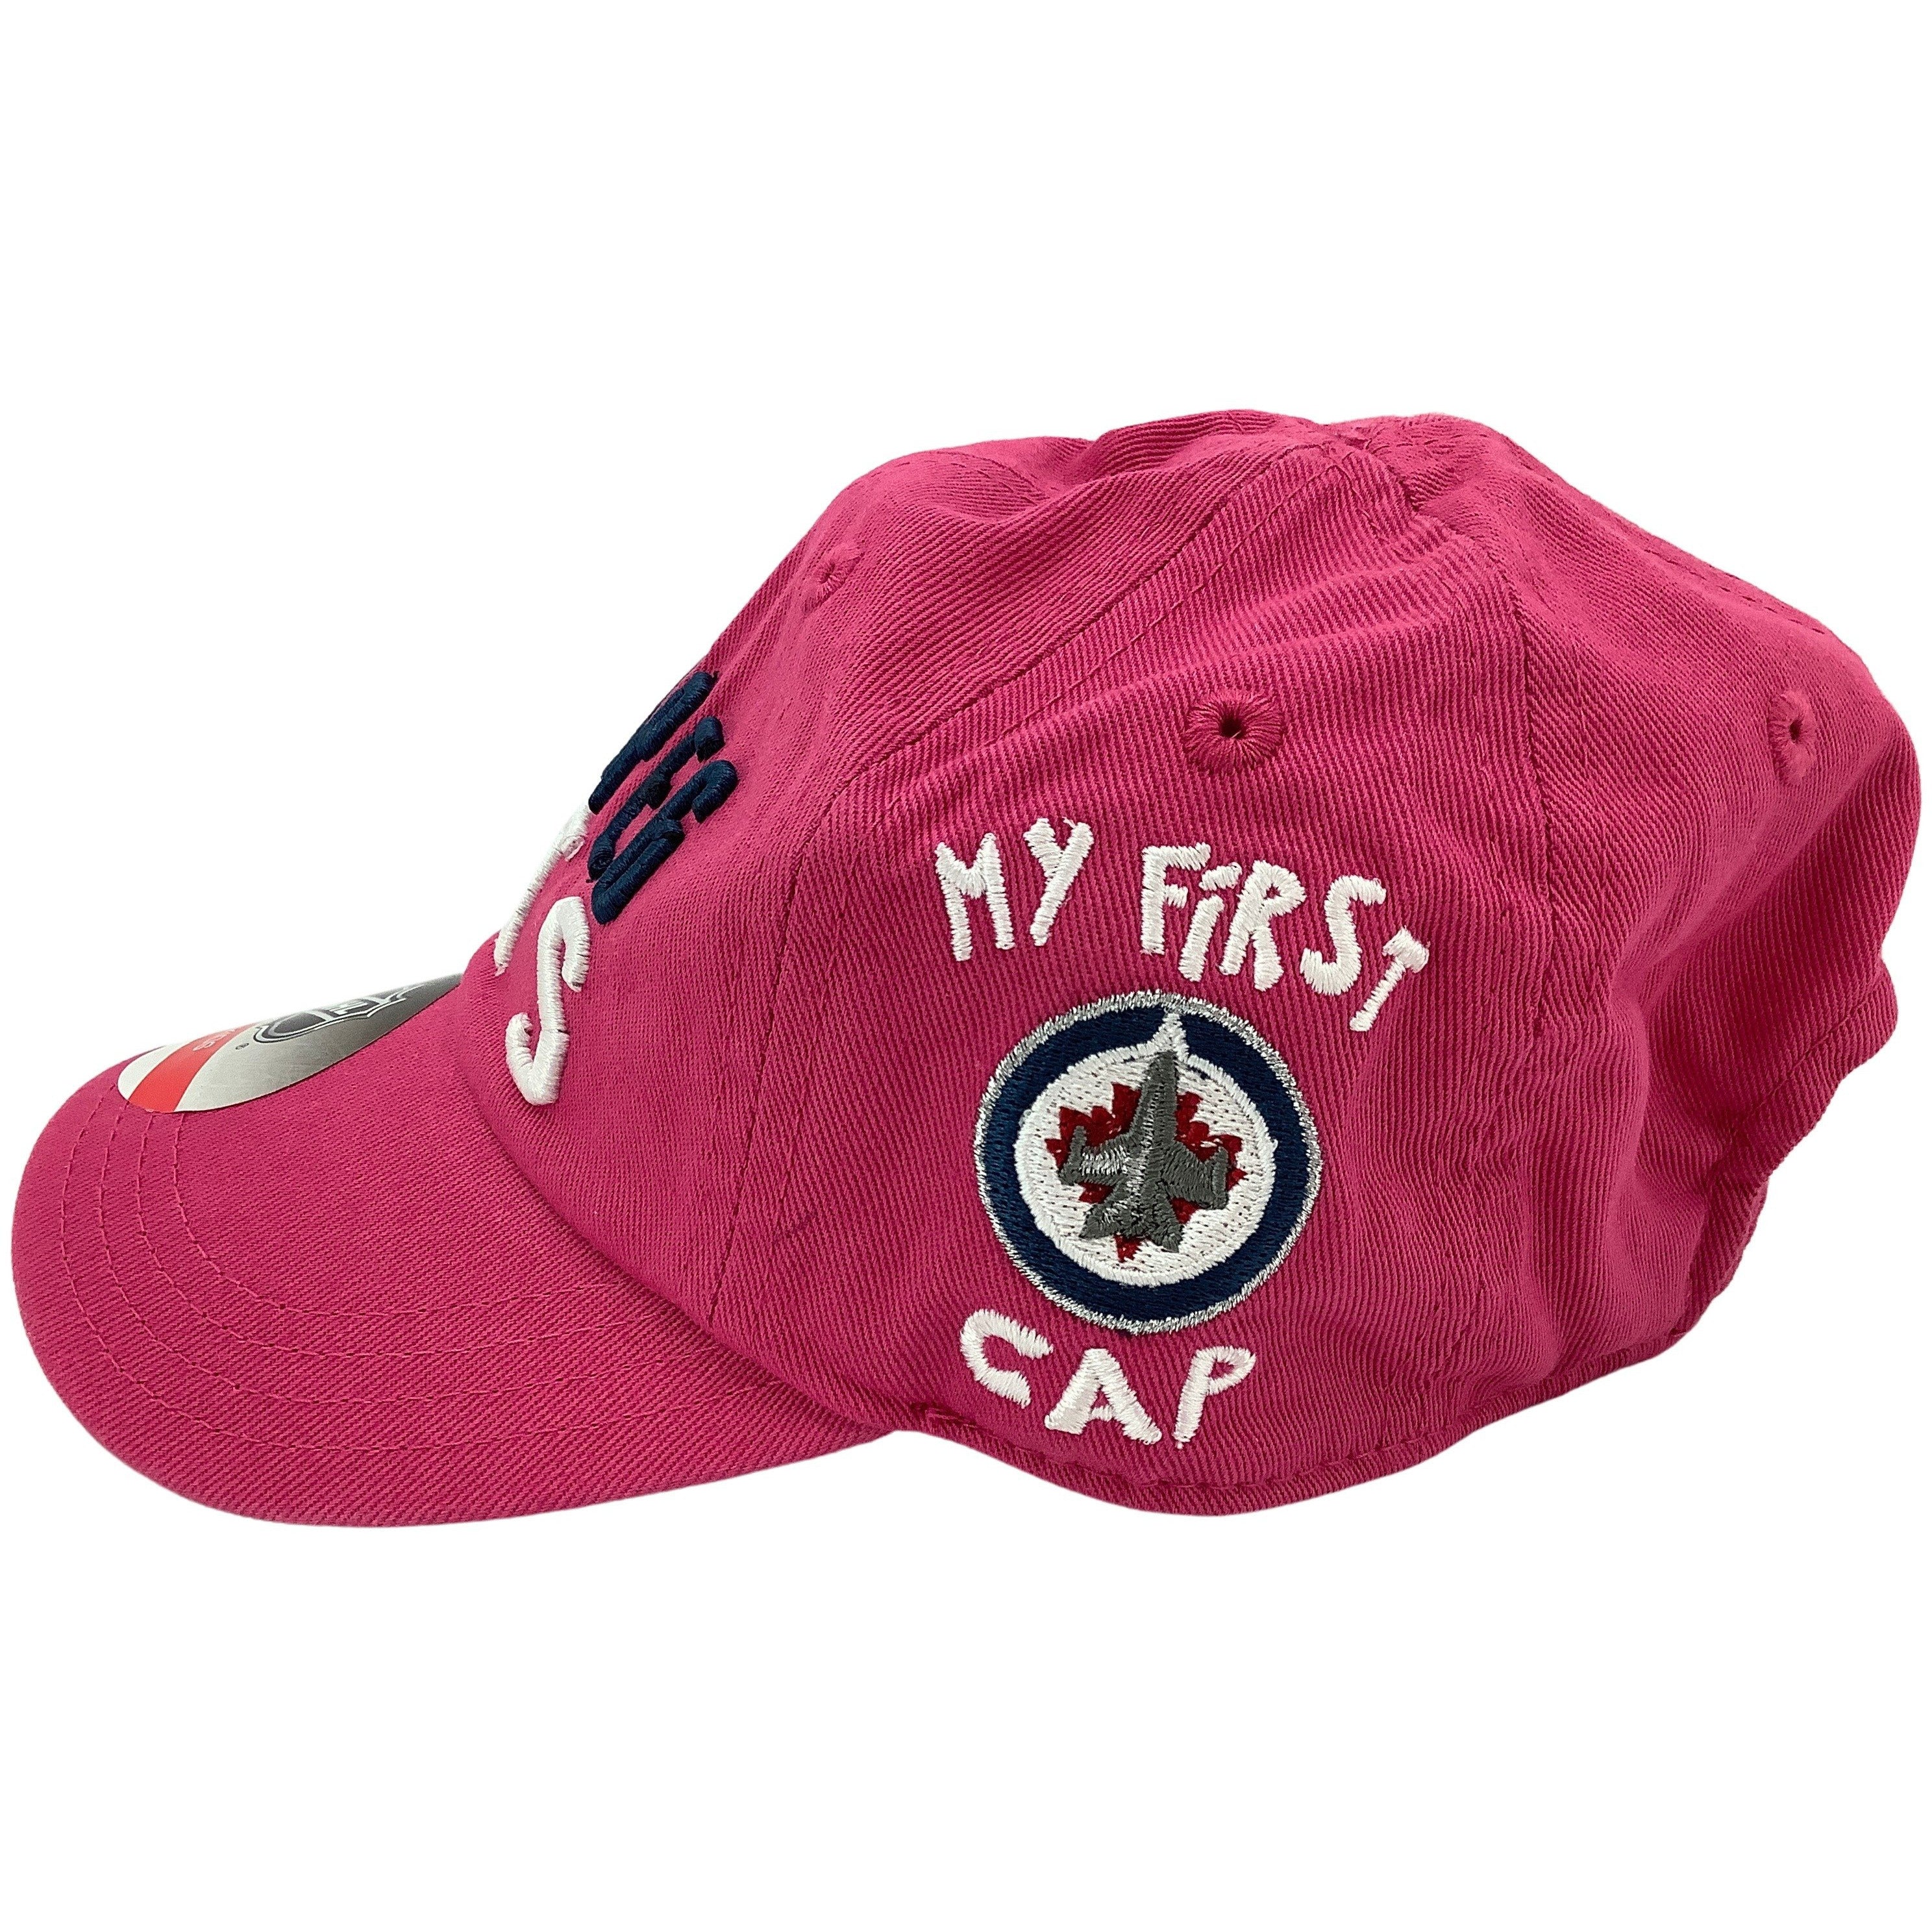 Winnipeg Jets Kids Baseball Cap: My First Cap: Pink